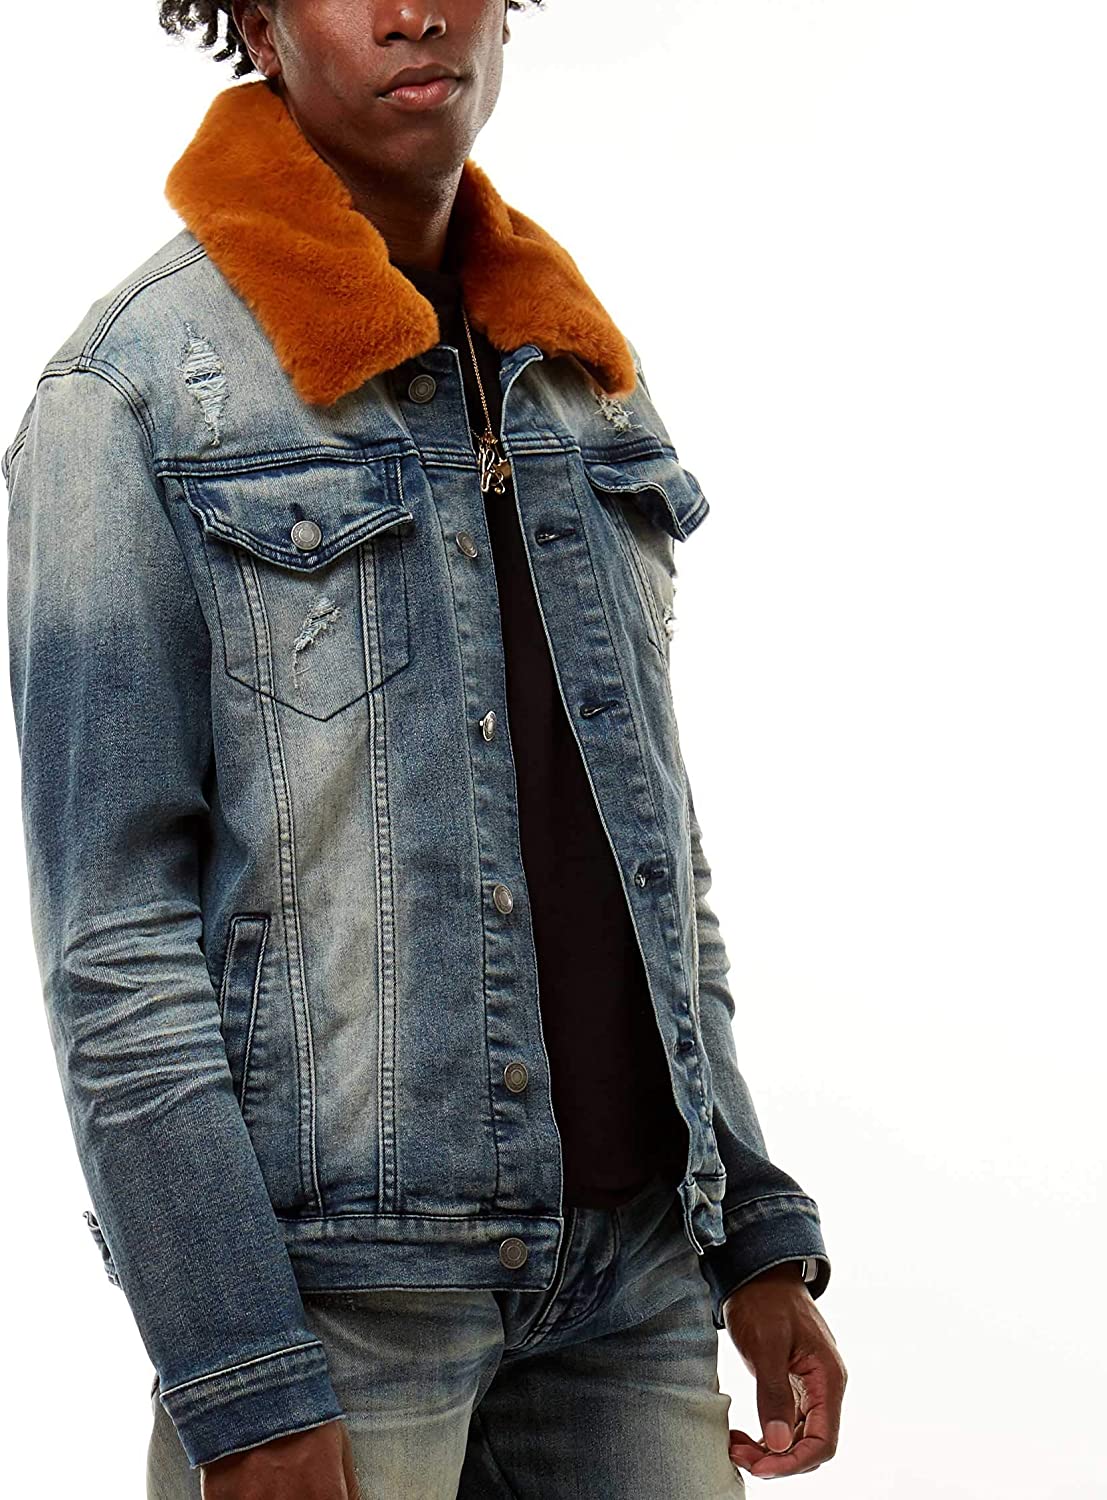 Zac Efron Denim Jacket With Fur Collar - Usajacket